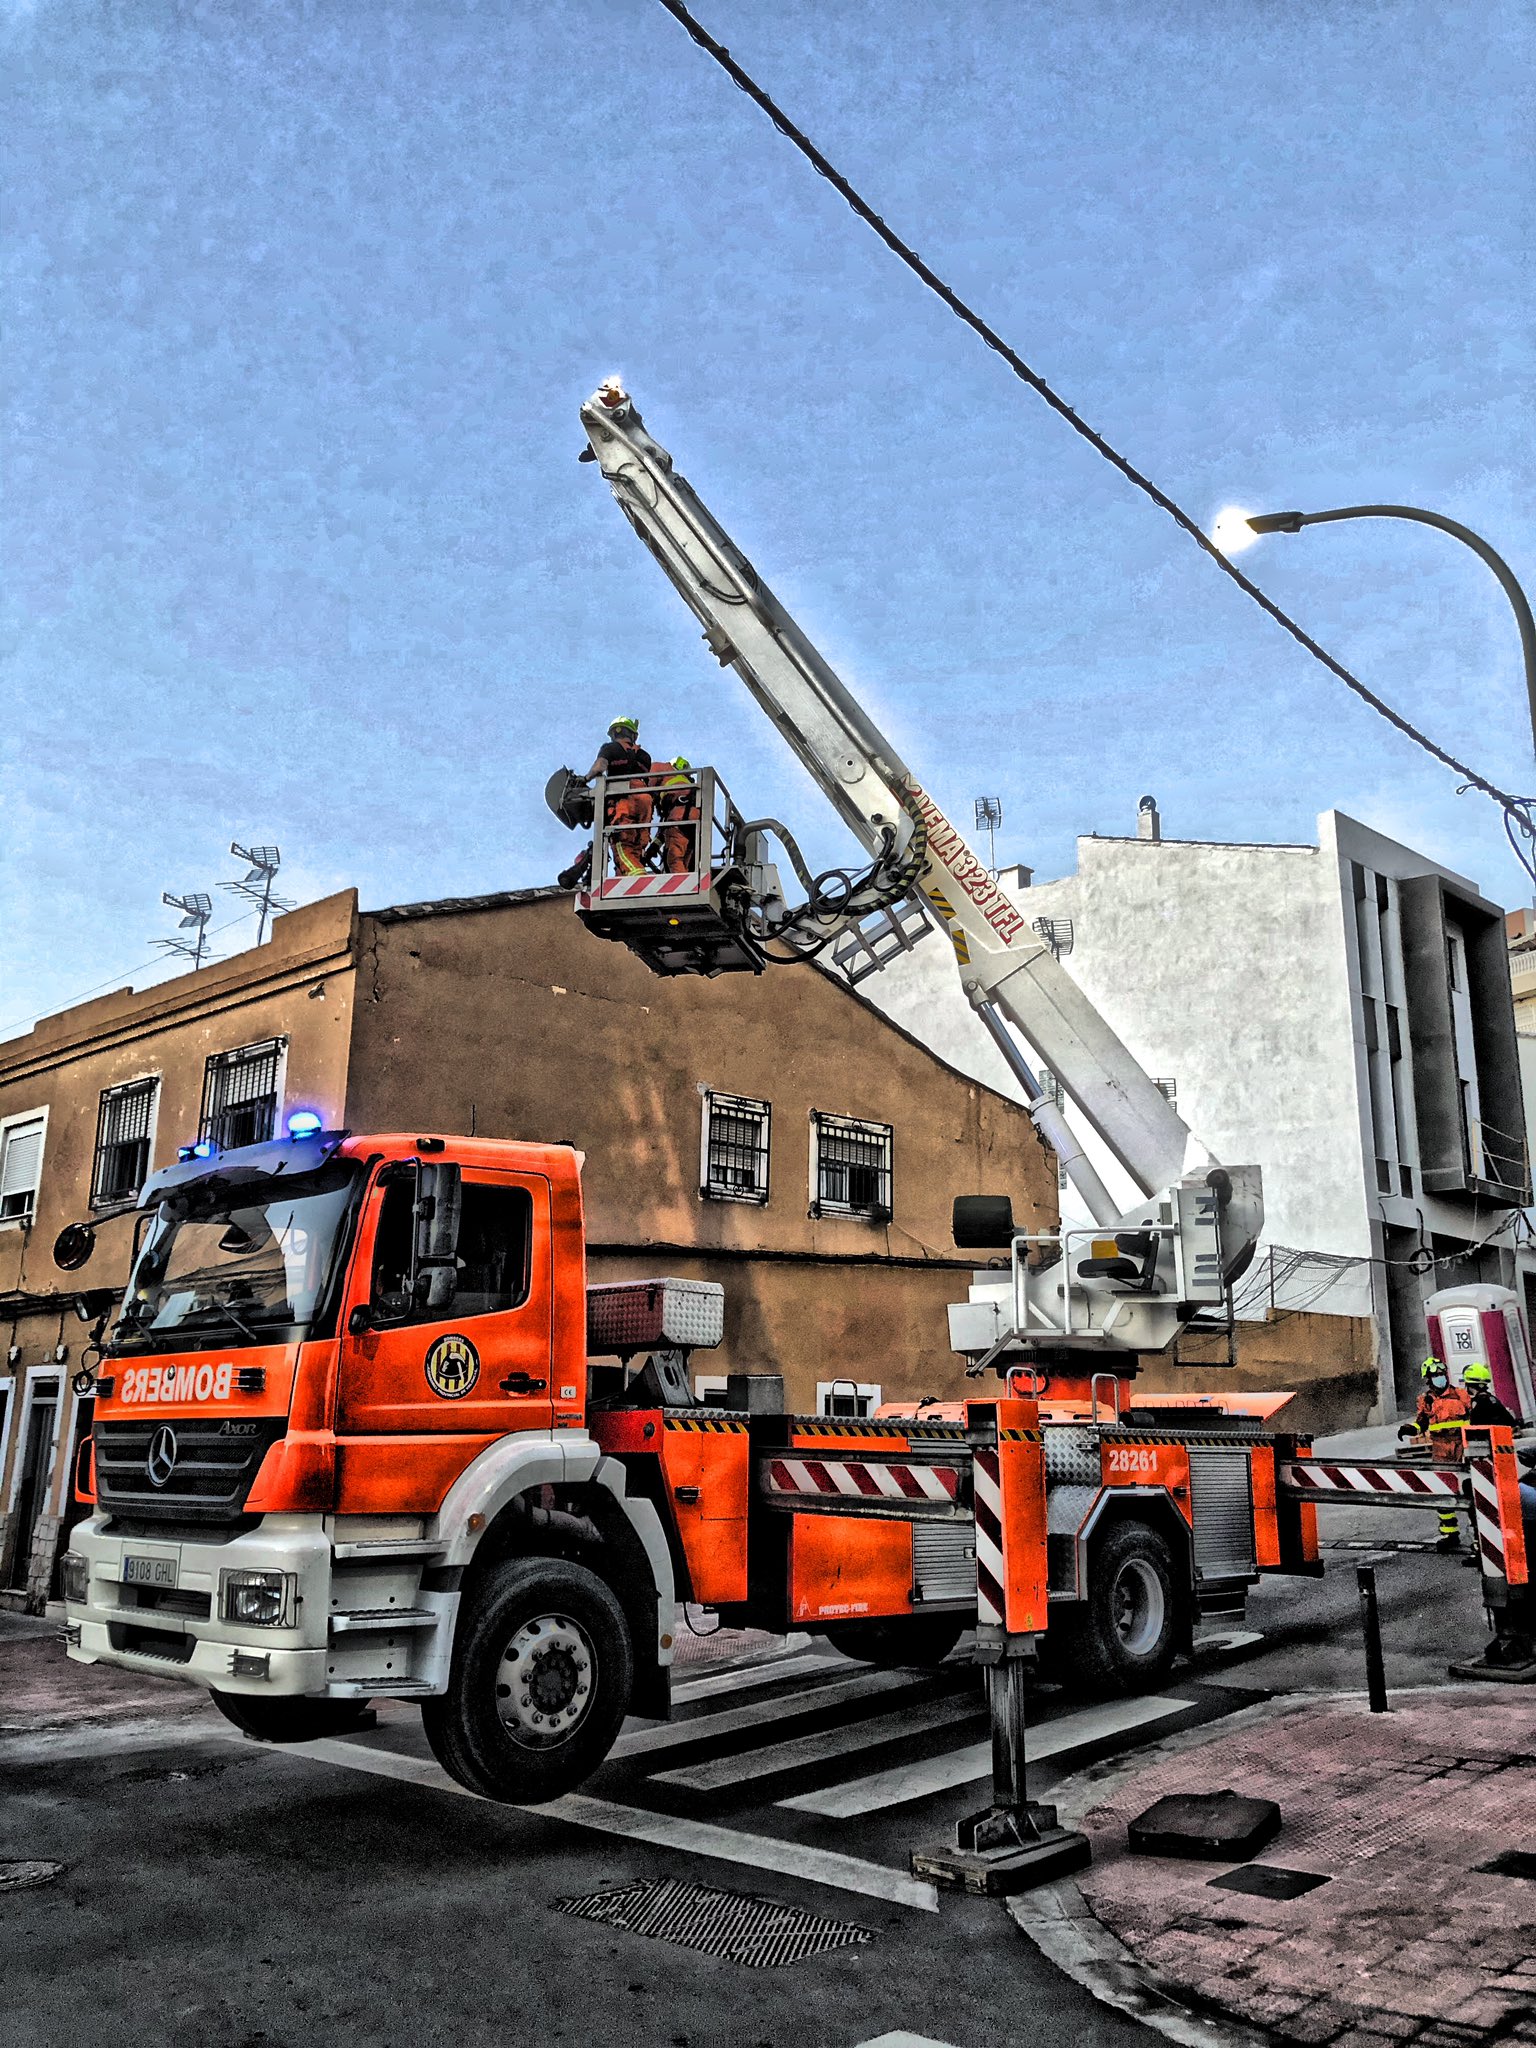 Angel en Twitter: "Saneamiento de fachada en #Burjassot , intervienen #bomberos Burjassot y Paterna https://t.co/Lctj72Z5Xi" / Twitter